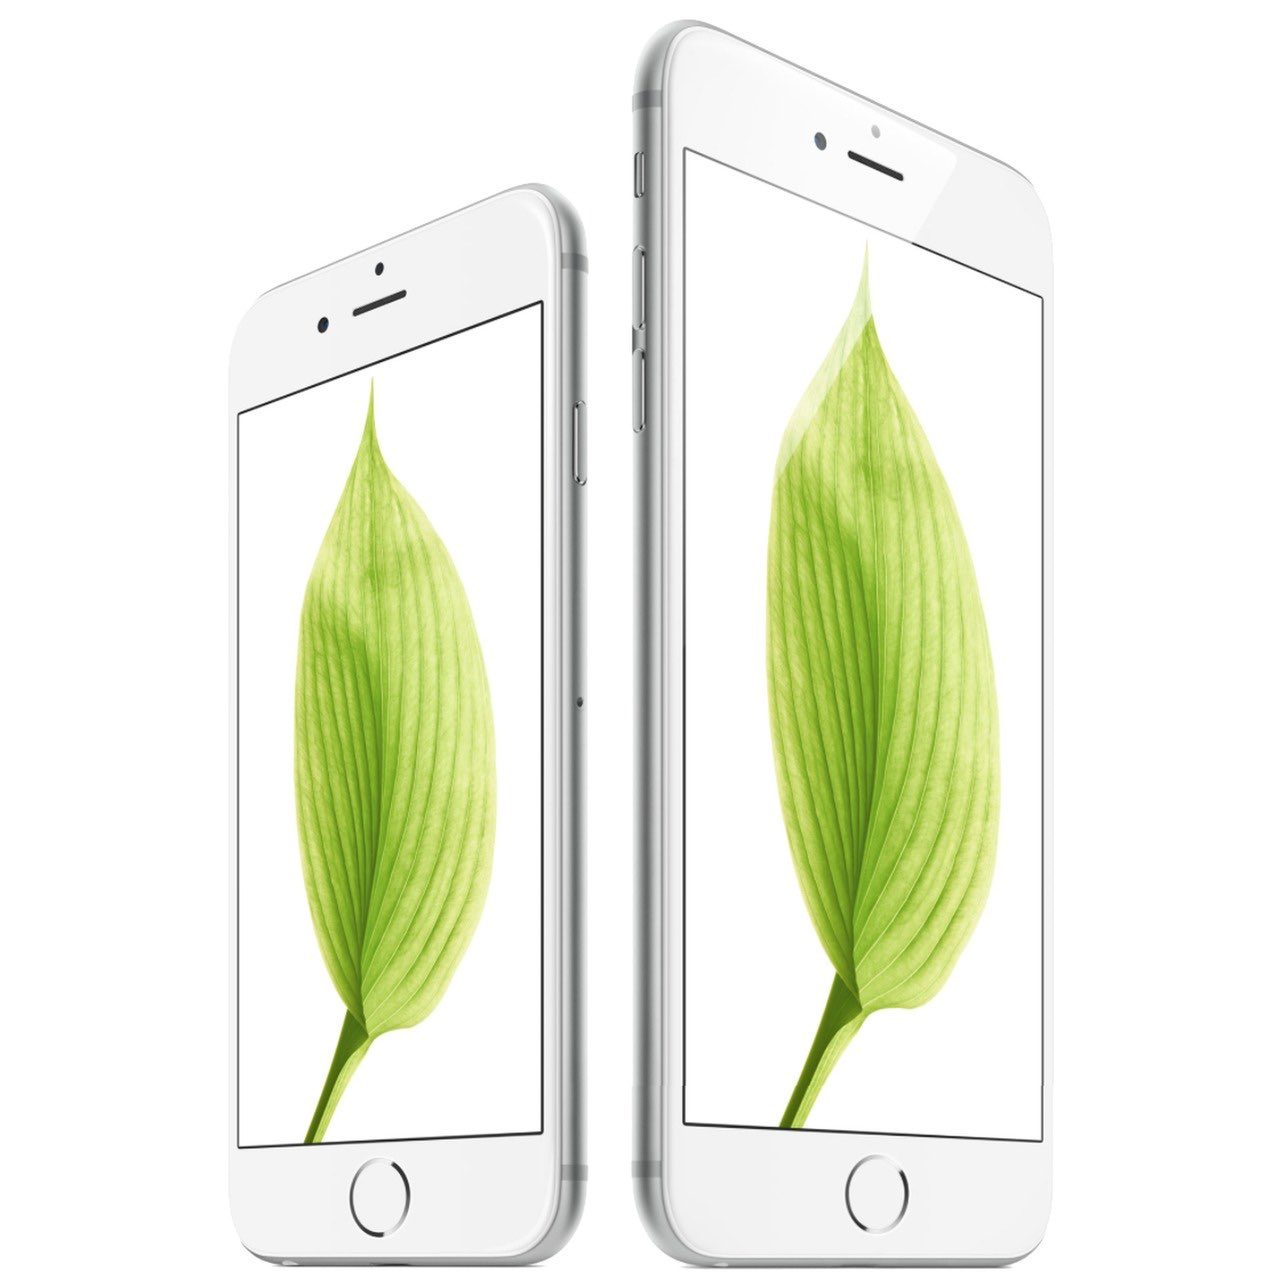 Stam Blaast op Dosering iPhone 6s Plus kopen met abonnement: vergelijk prijs iPhone 6s Plus